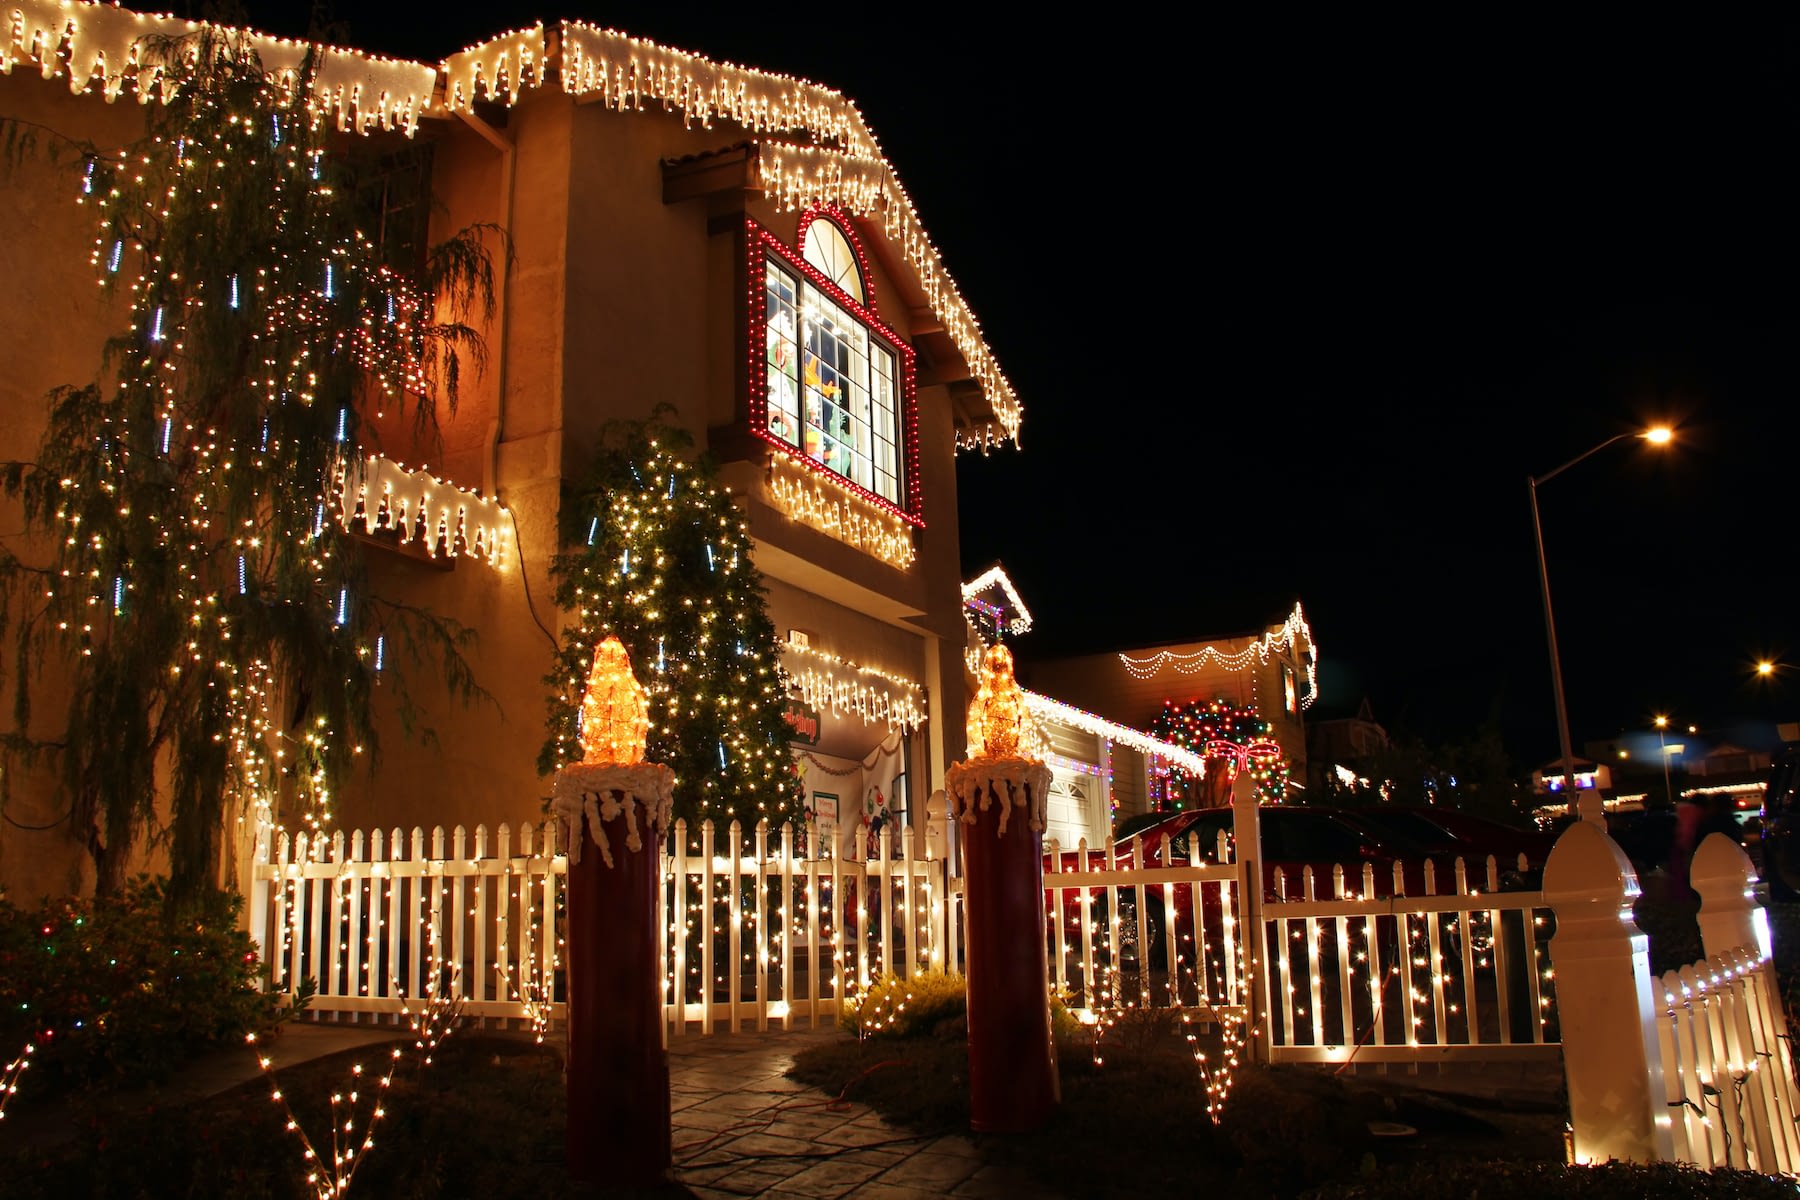 Residential Christmas Lighting